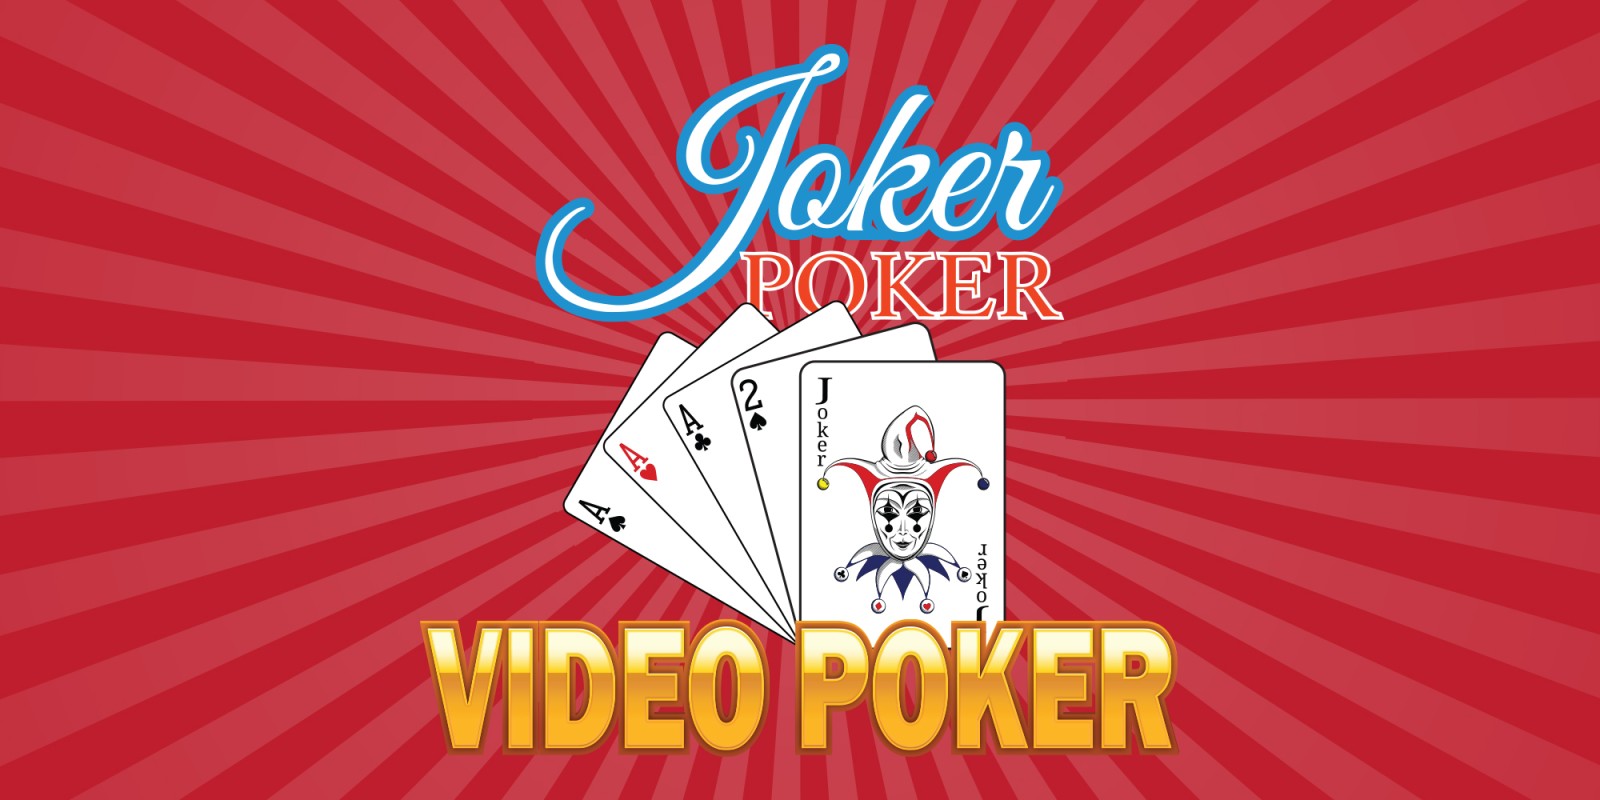 joker poker video games